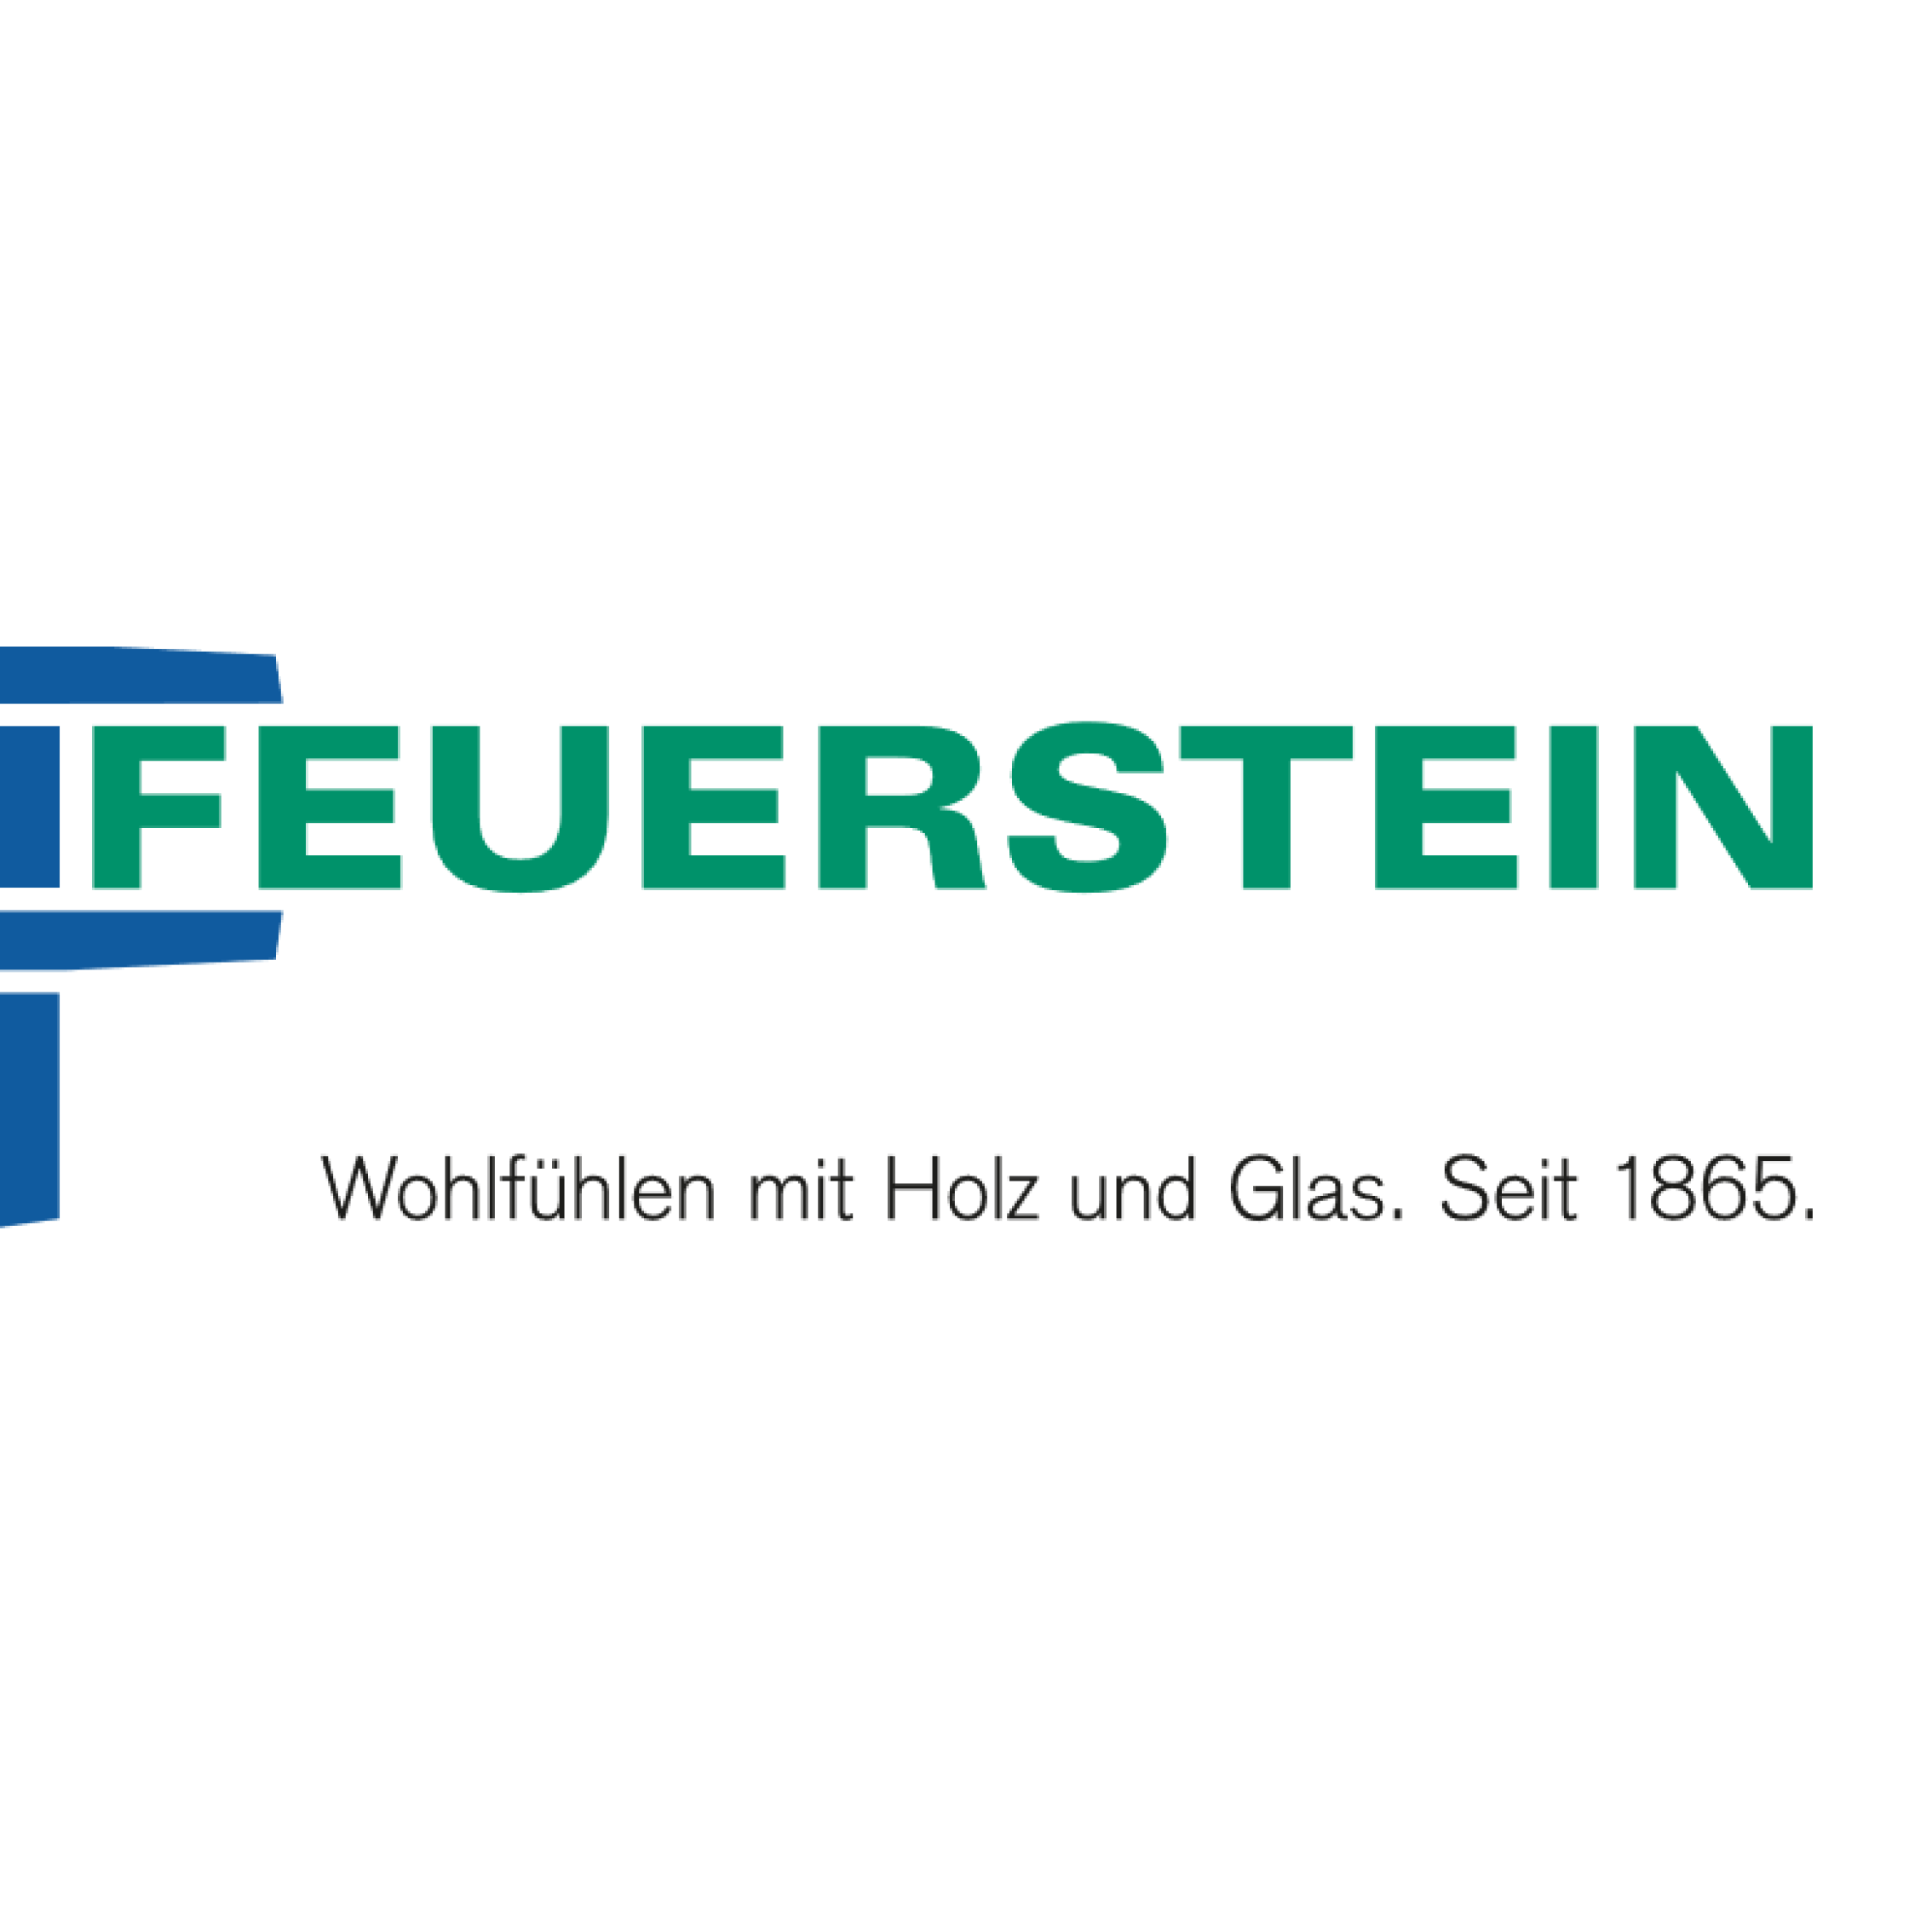 Feuerstein Josef GmbH & Co KG